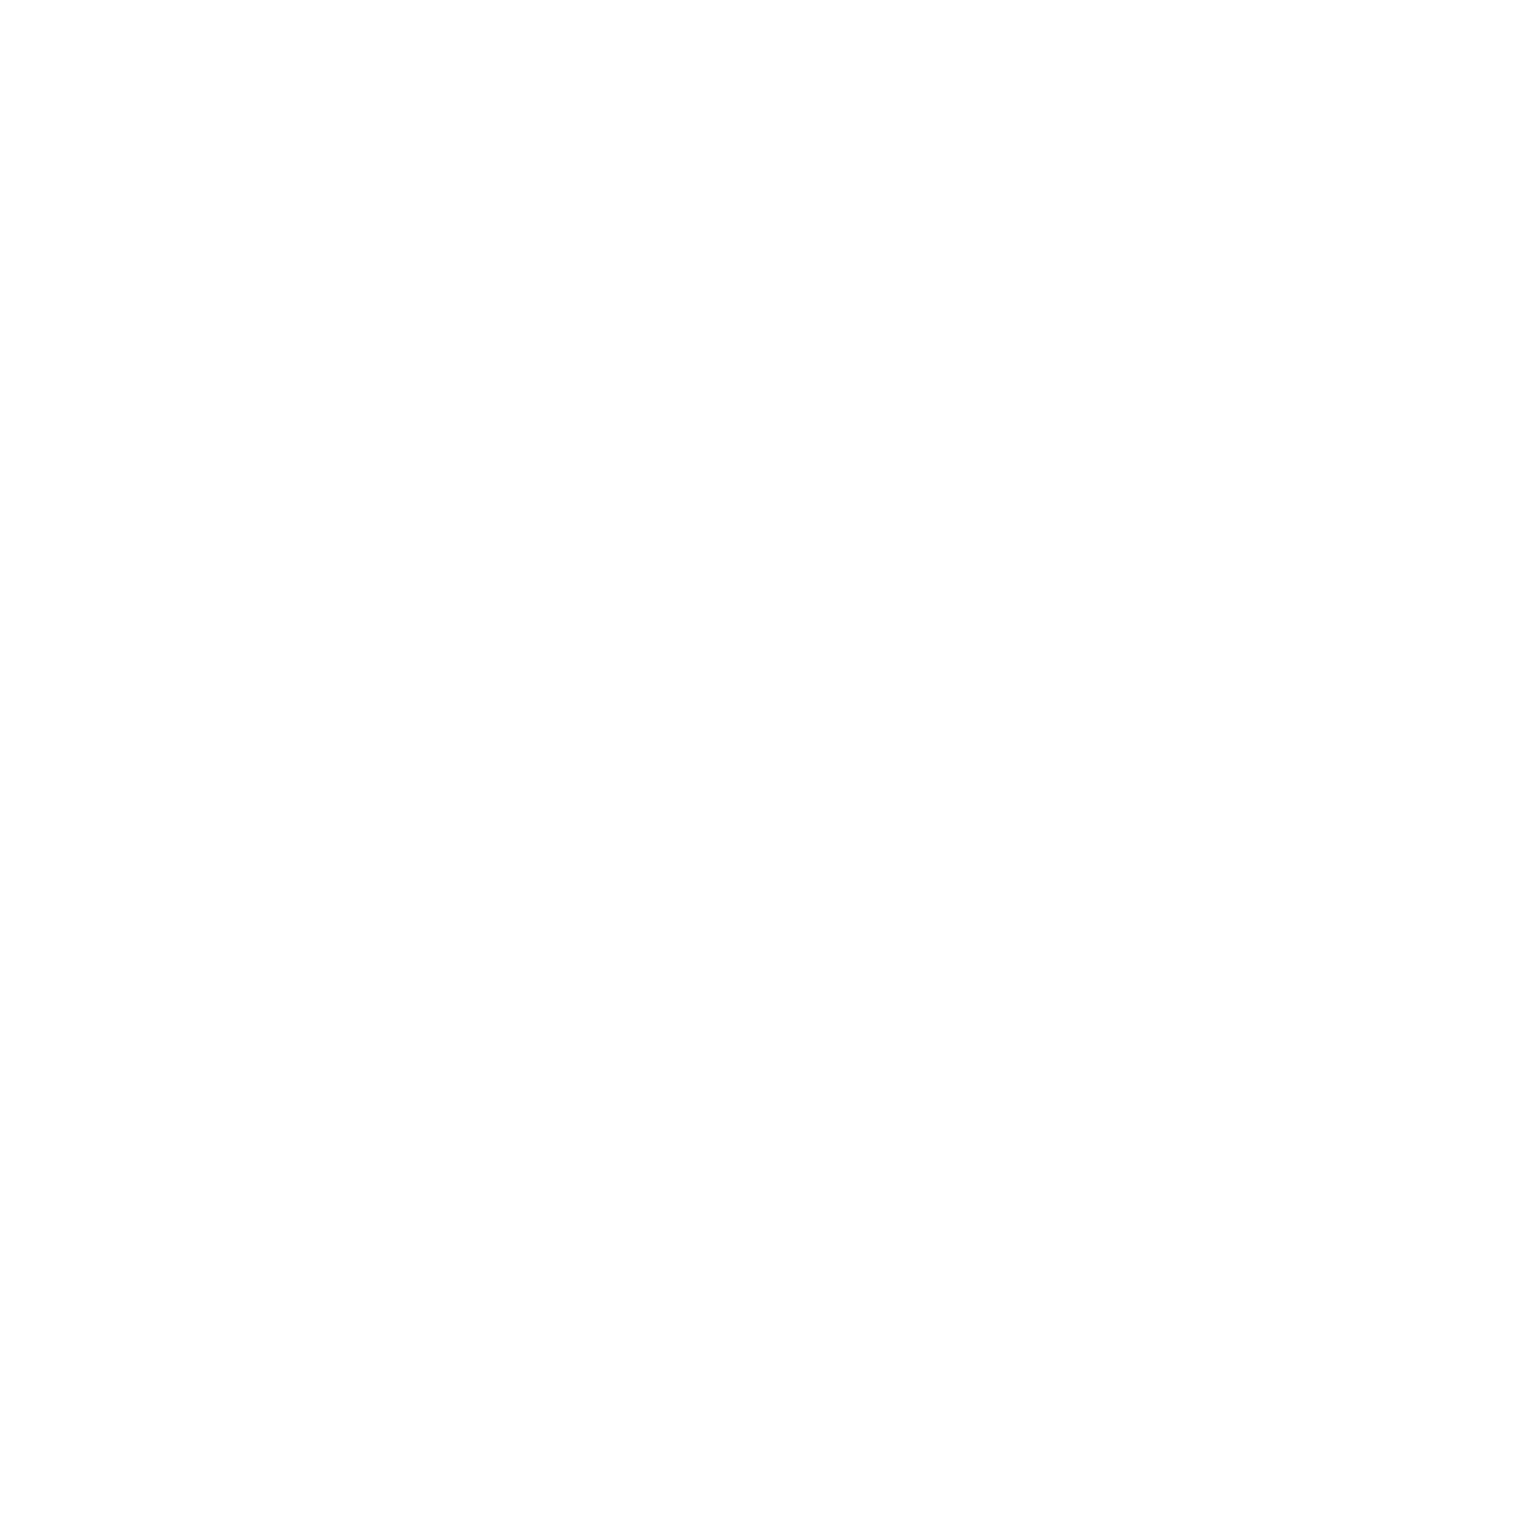 Mapfre logo for dark backgrounds (transparent PNG)